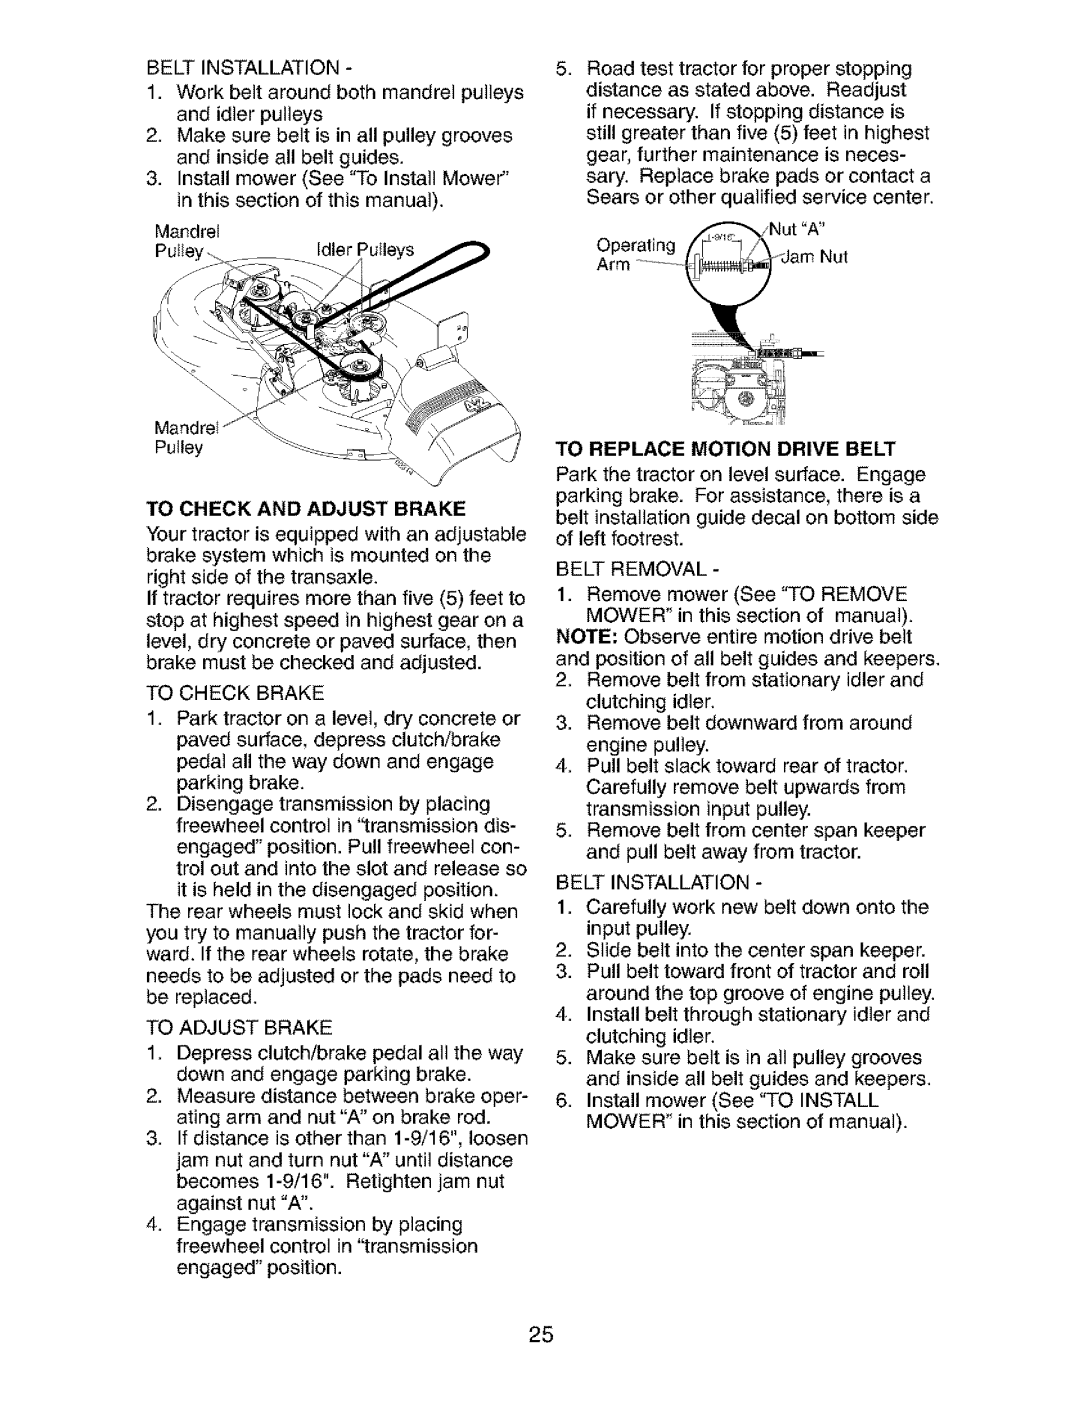 Craftsman 917.273823 owner manual To Adjust Brake 